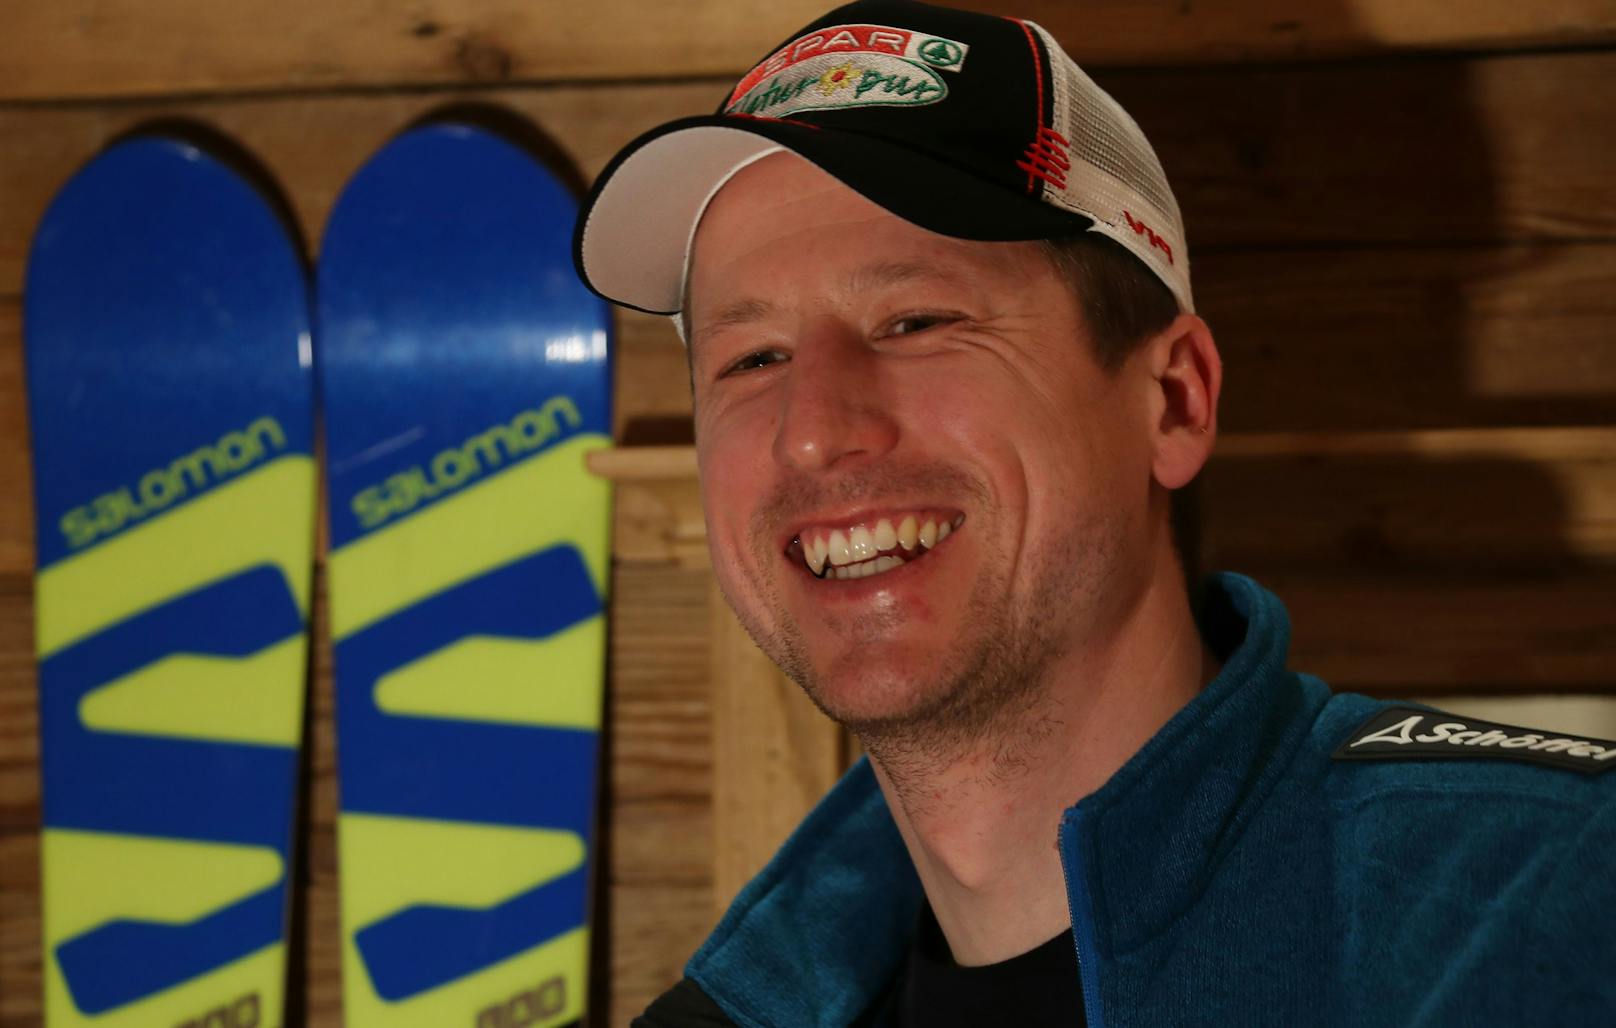 Die besten Bilder von Ski-Star Hannes Reichelt